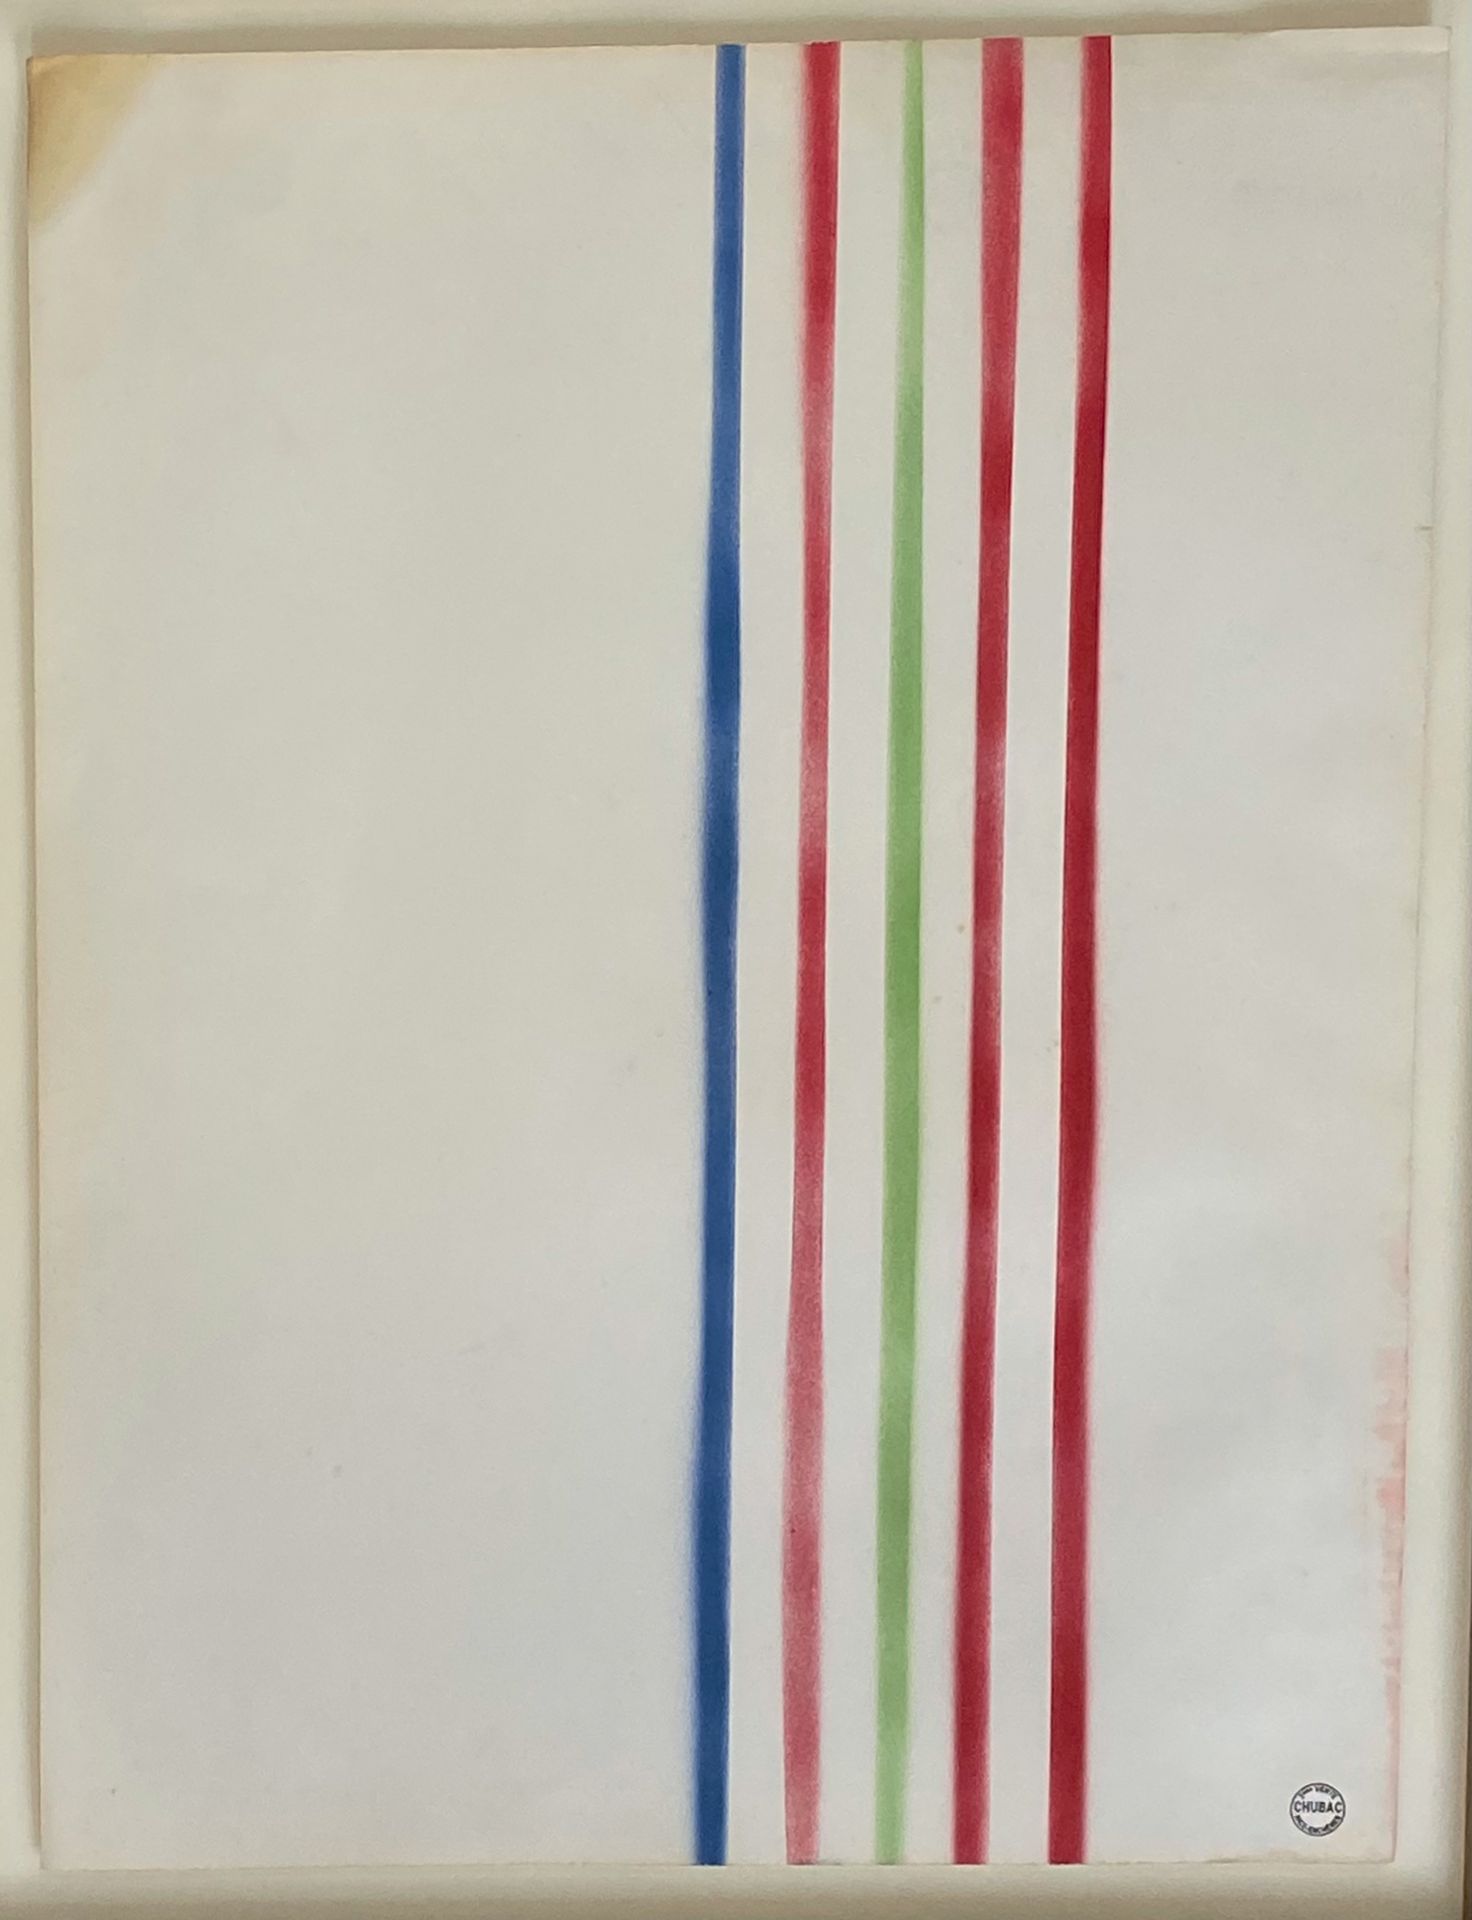 Albert CHUBAC (1925-2008) - Composición
Lápices de colores sobre papel, sello de&hellip;